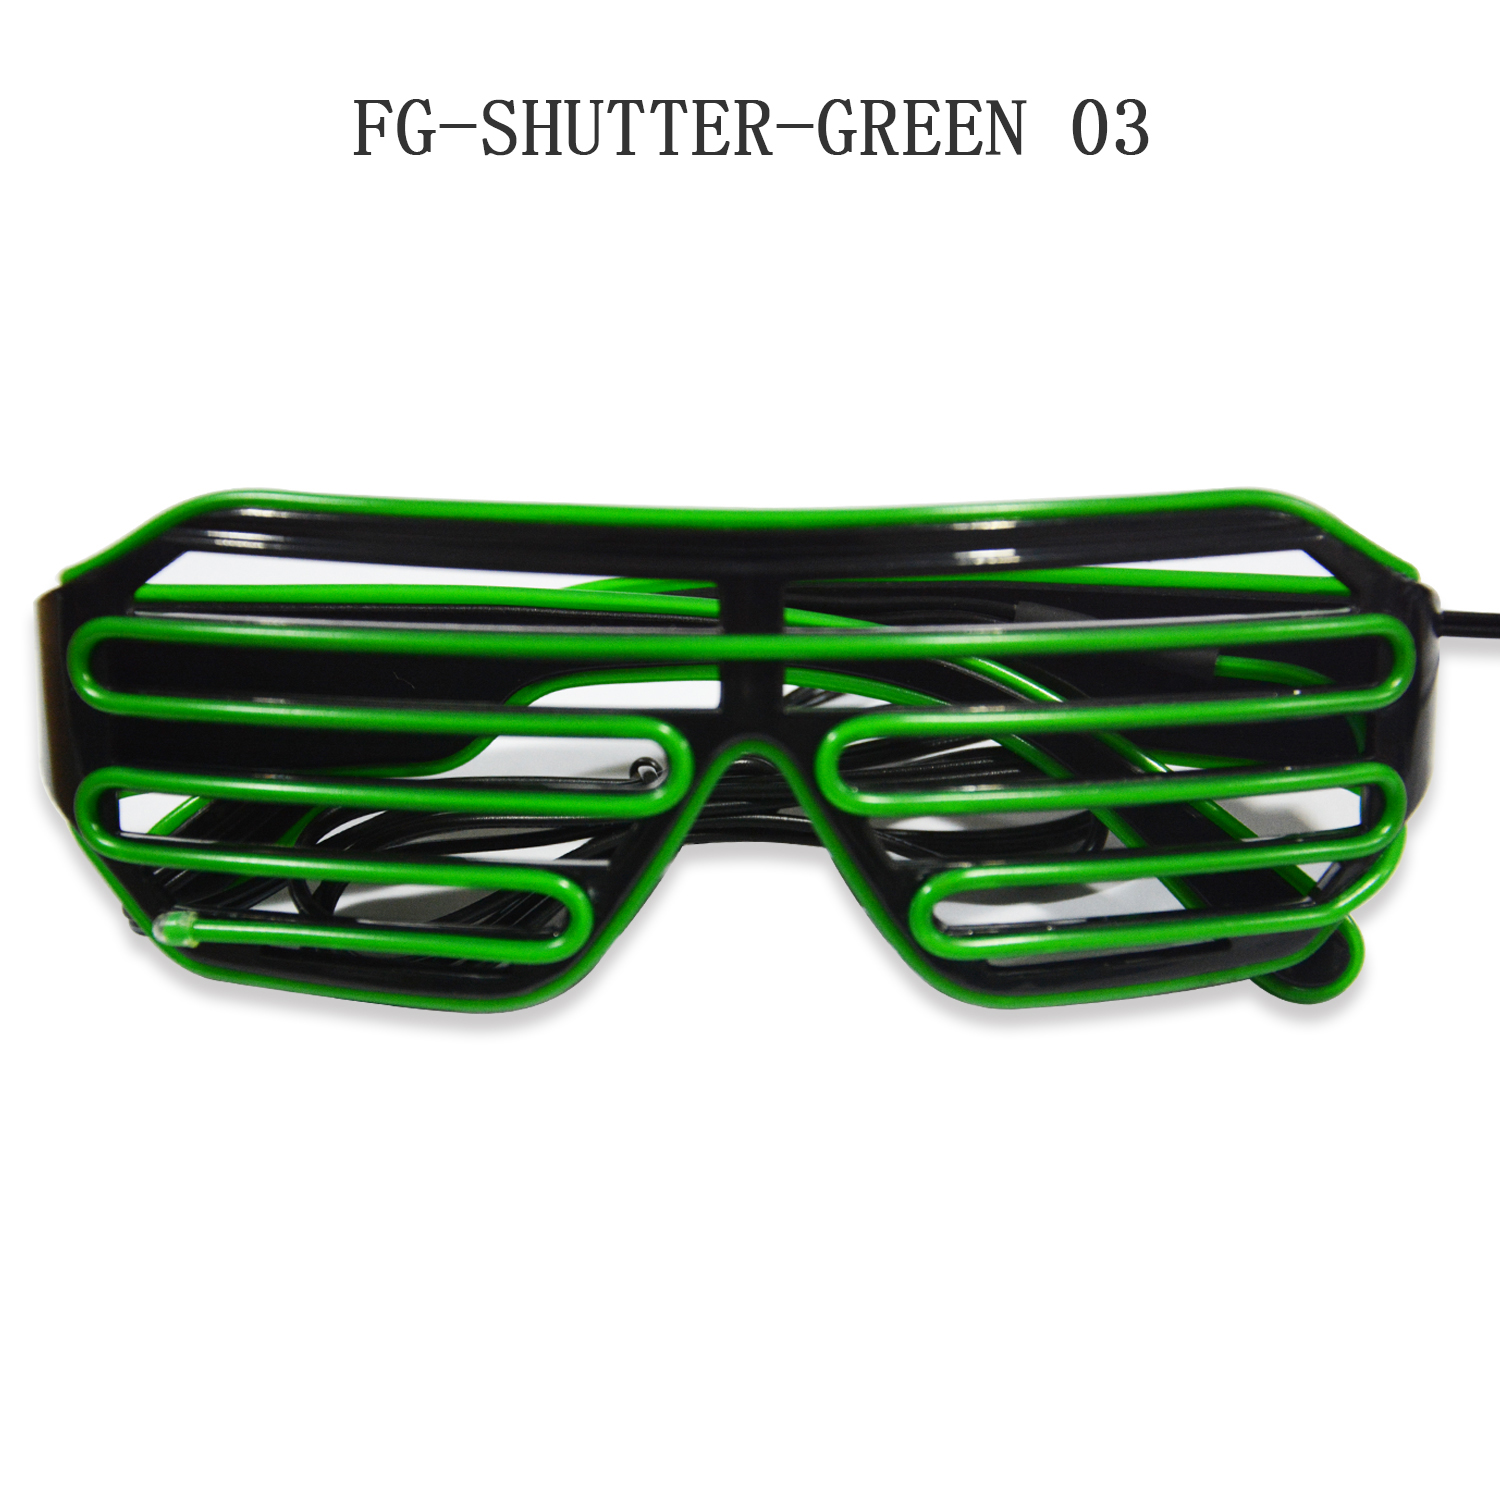 FG-SHUTTER-GREEN03